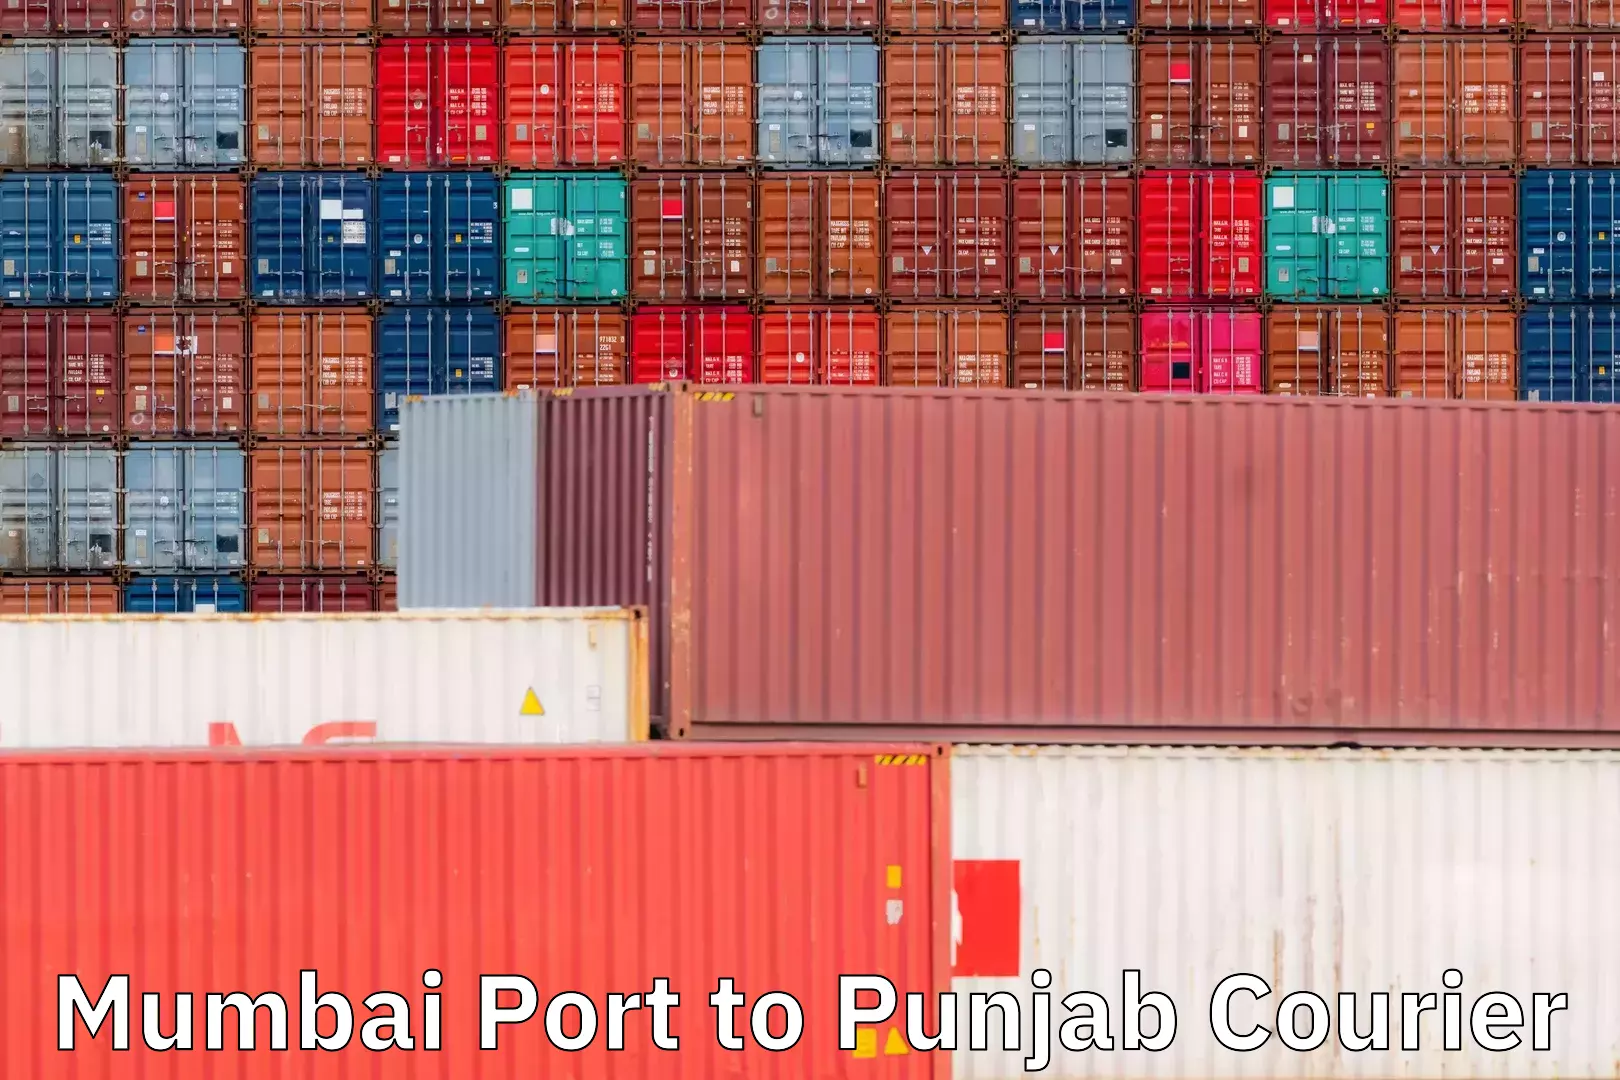 Regular parcel service Mumbai Port to Punjab